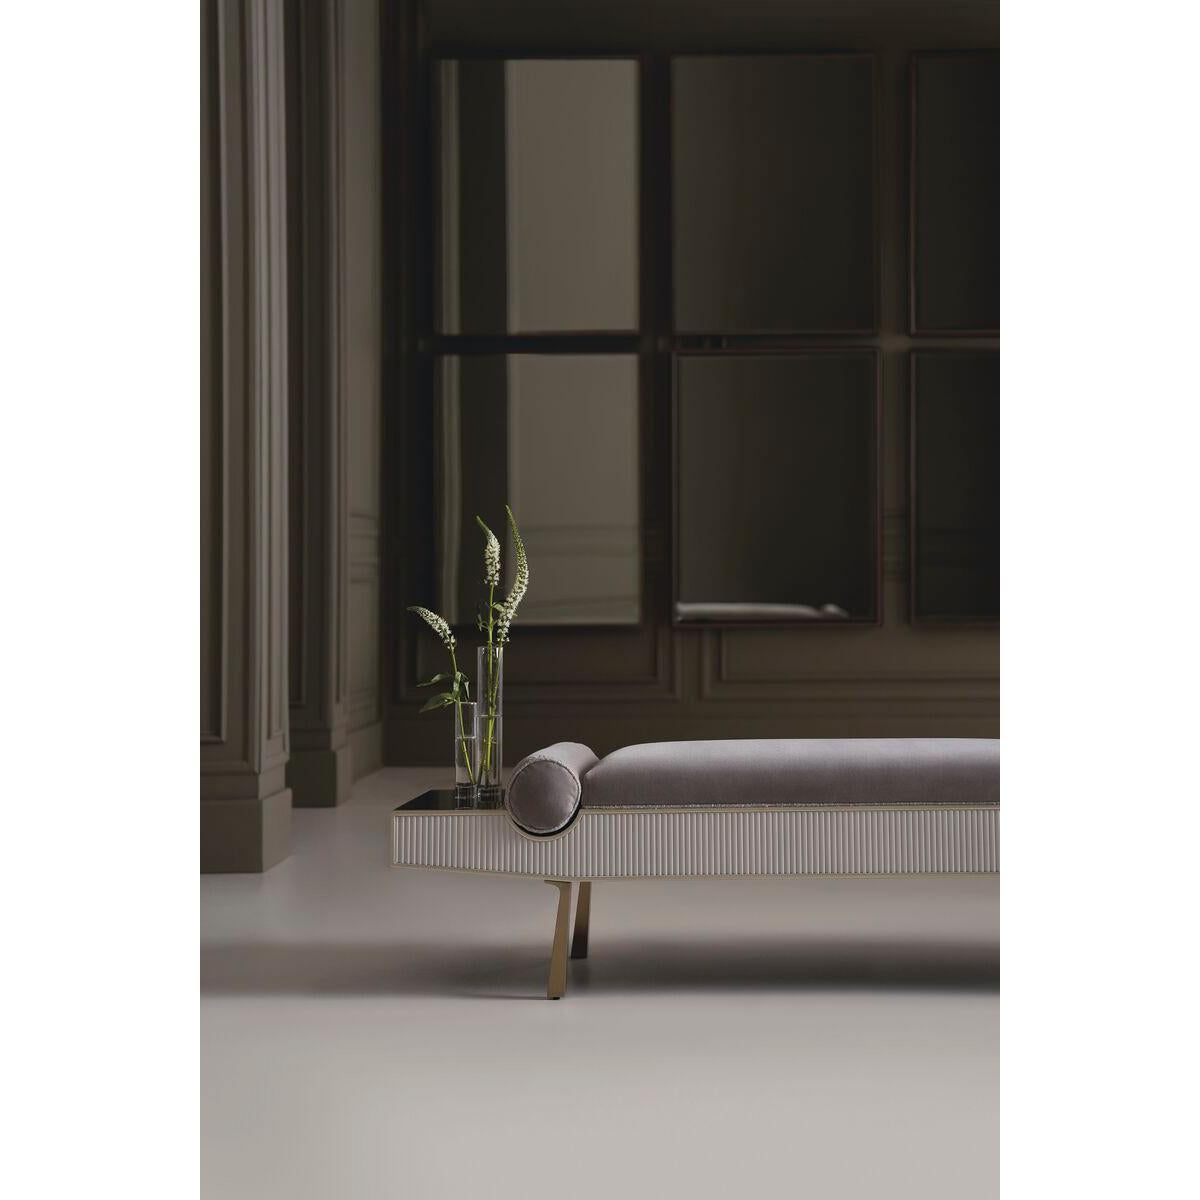 Elegant dans un mélange de matériaux luxueux, ce banc épuré est bien adapté à la fin du lit ou à l'entrée.

Un tablier cannelé en finition Lait d'amande crémeuse apporte un sens du rythme et un motif frappant, complété par un tissu mohair gris doux